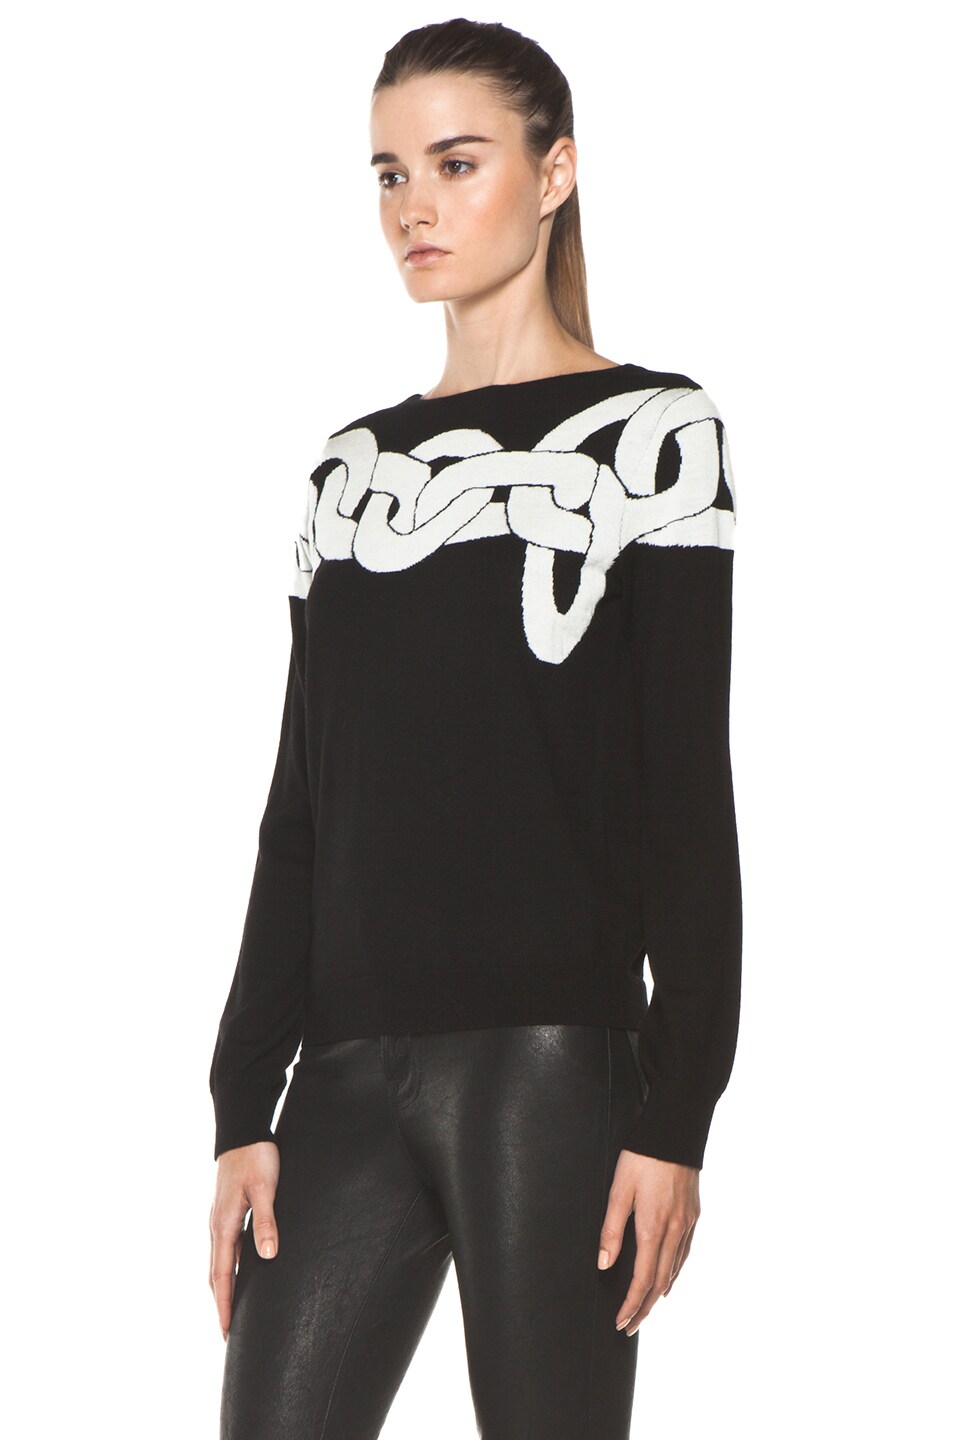 Diane von Furstenberg Tinkit Sweater in Simple Chains Black | FWRD